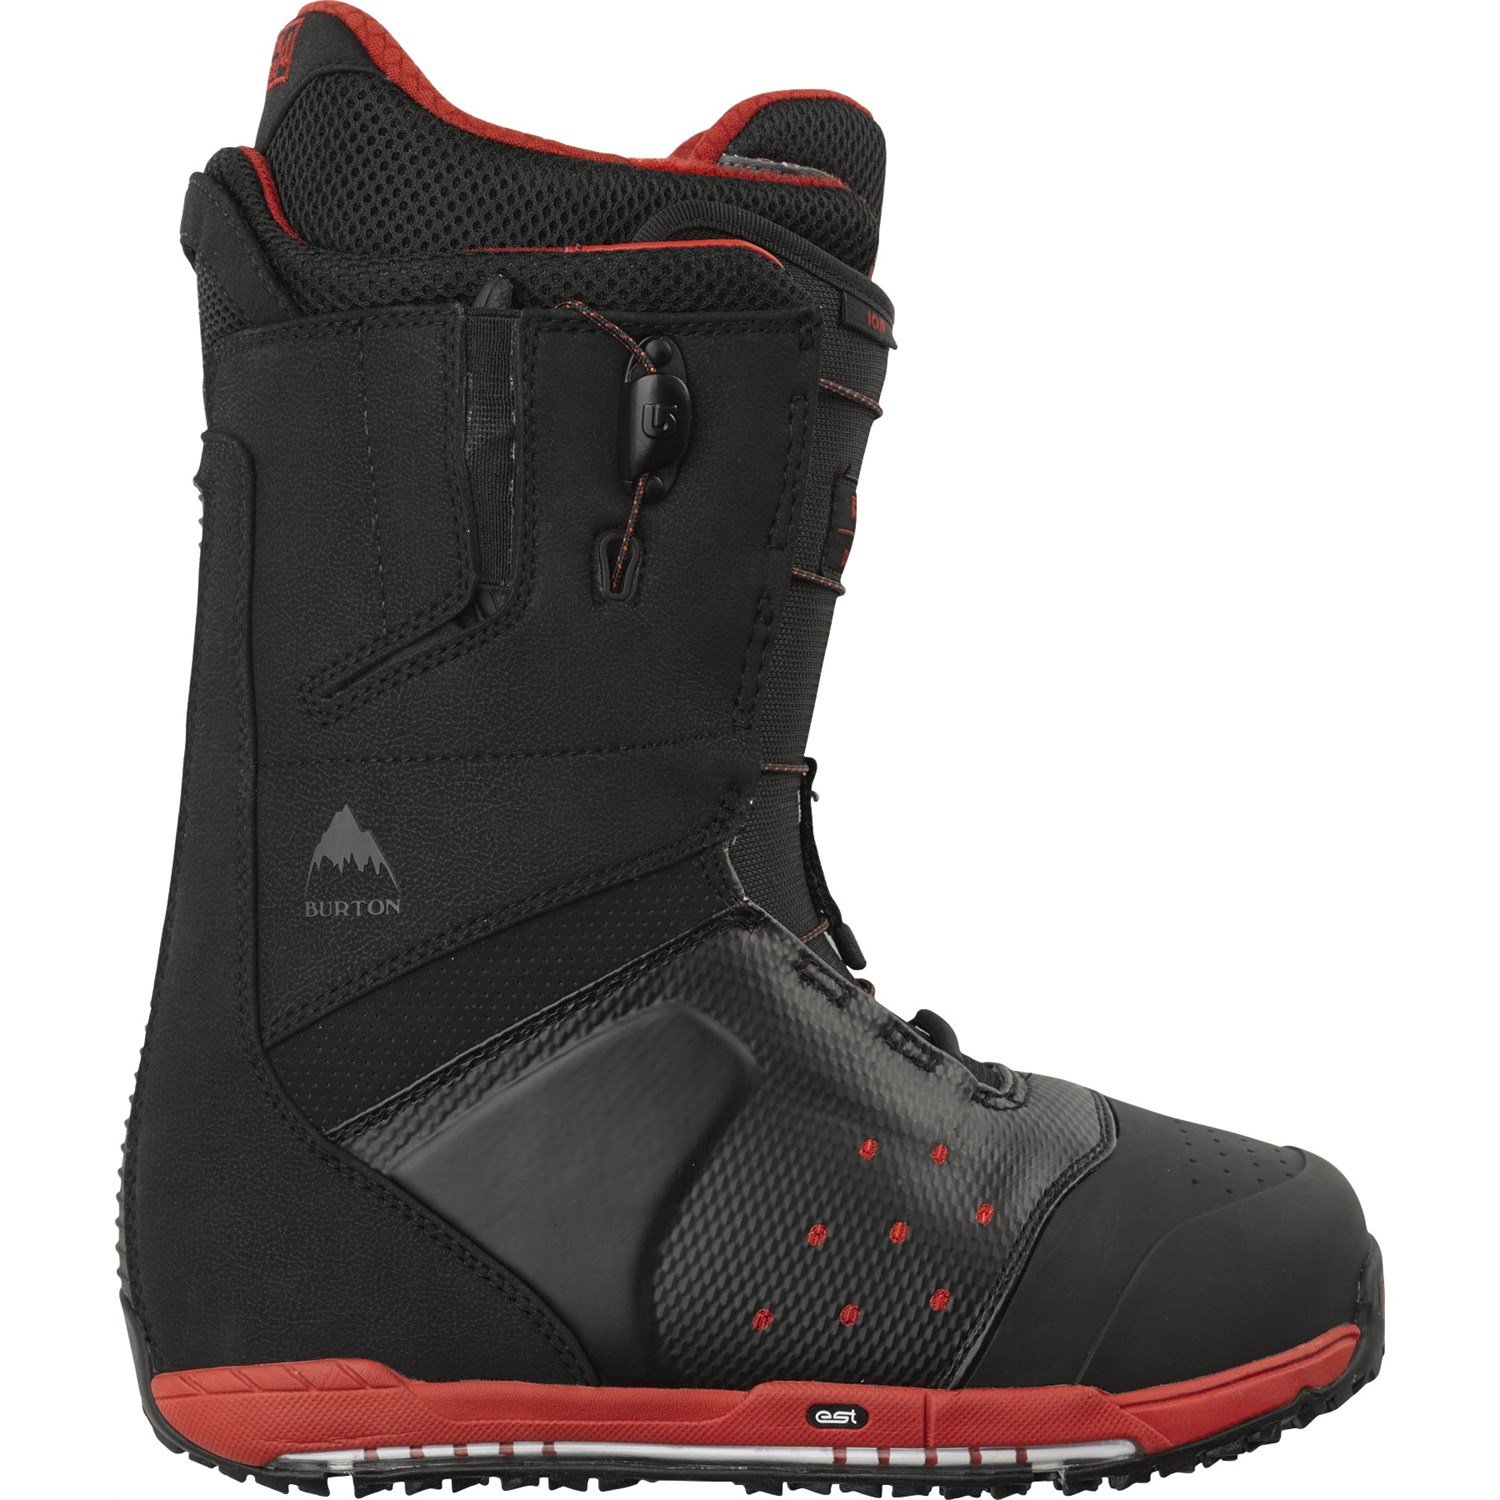 Het formulier invoeren straal Burton Ion Snowboard Boots 2014 | evo